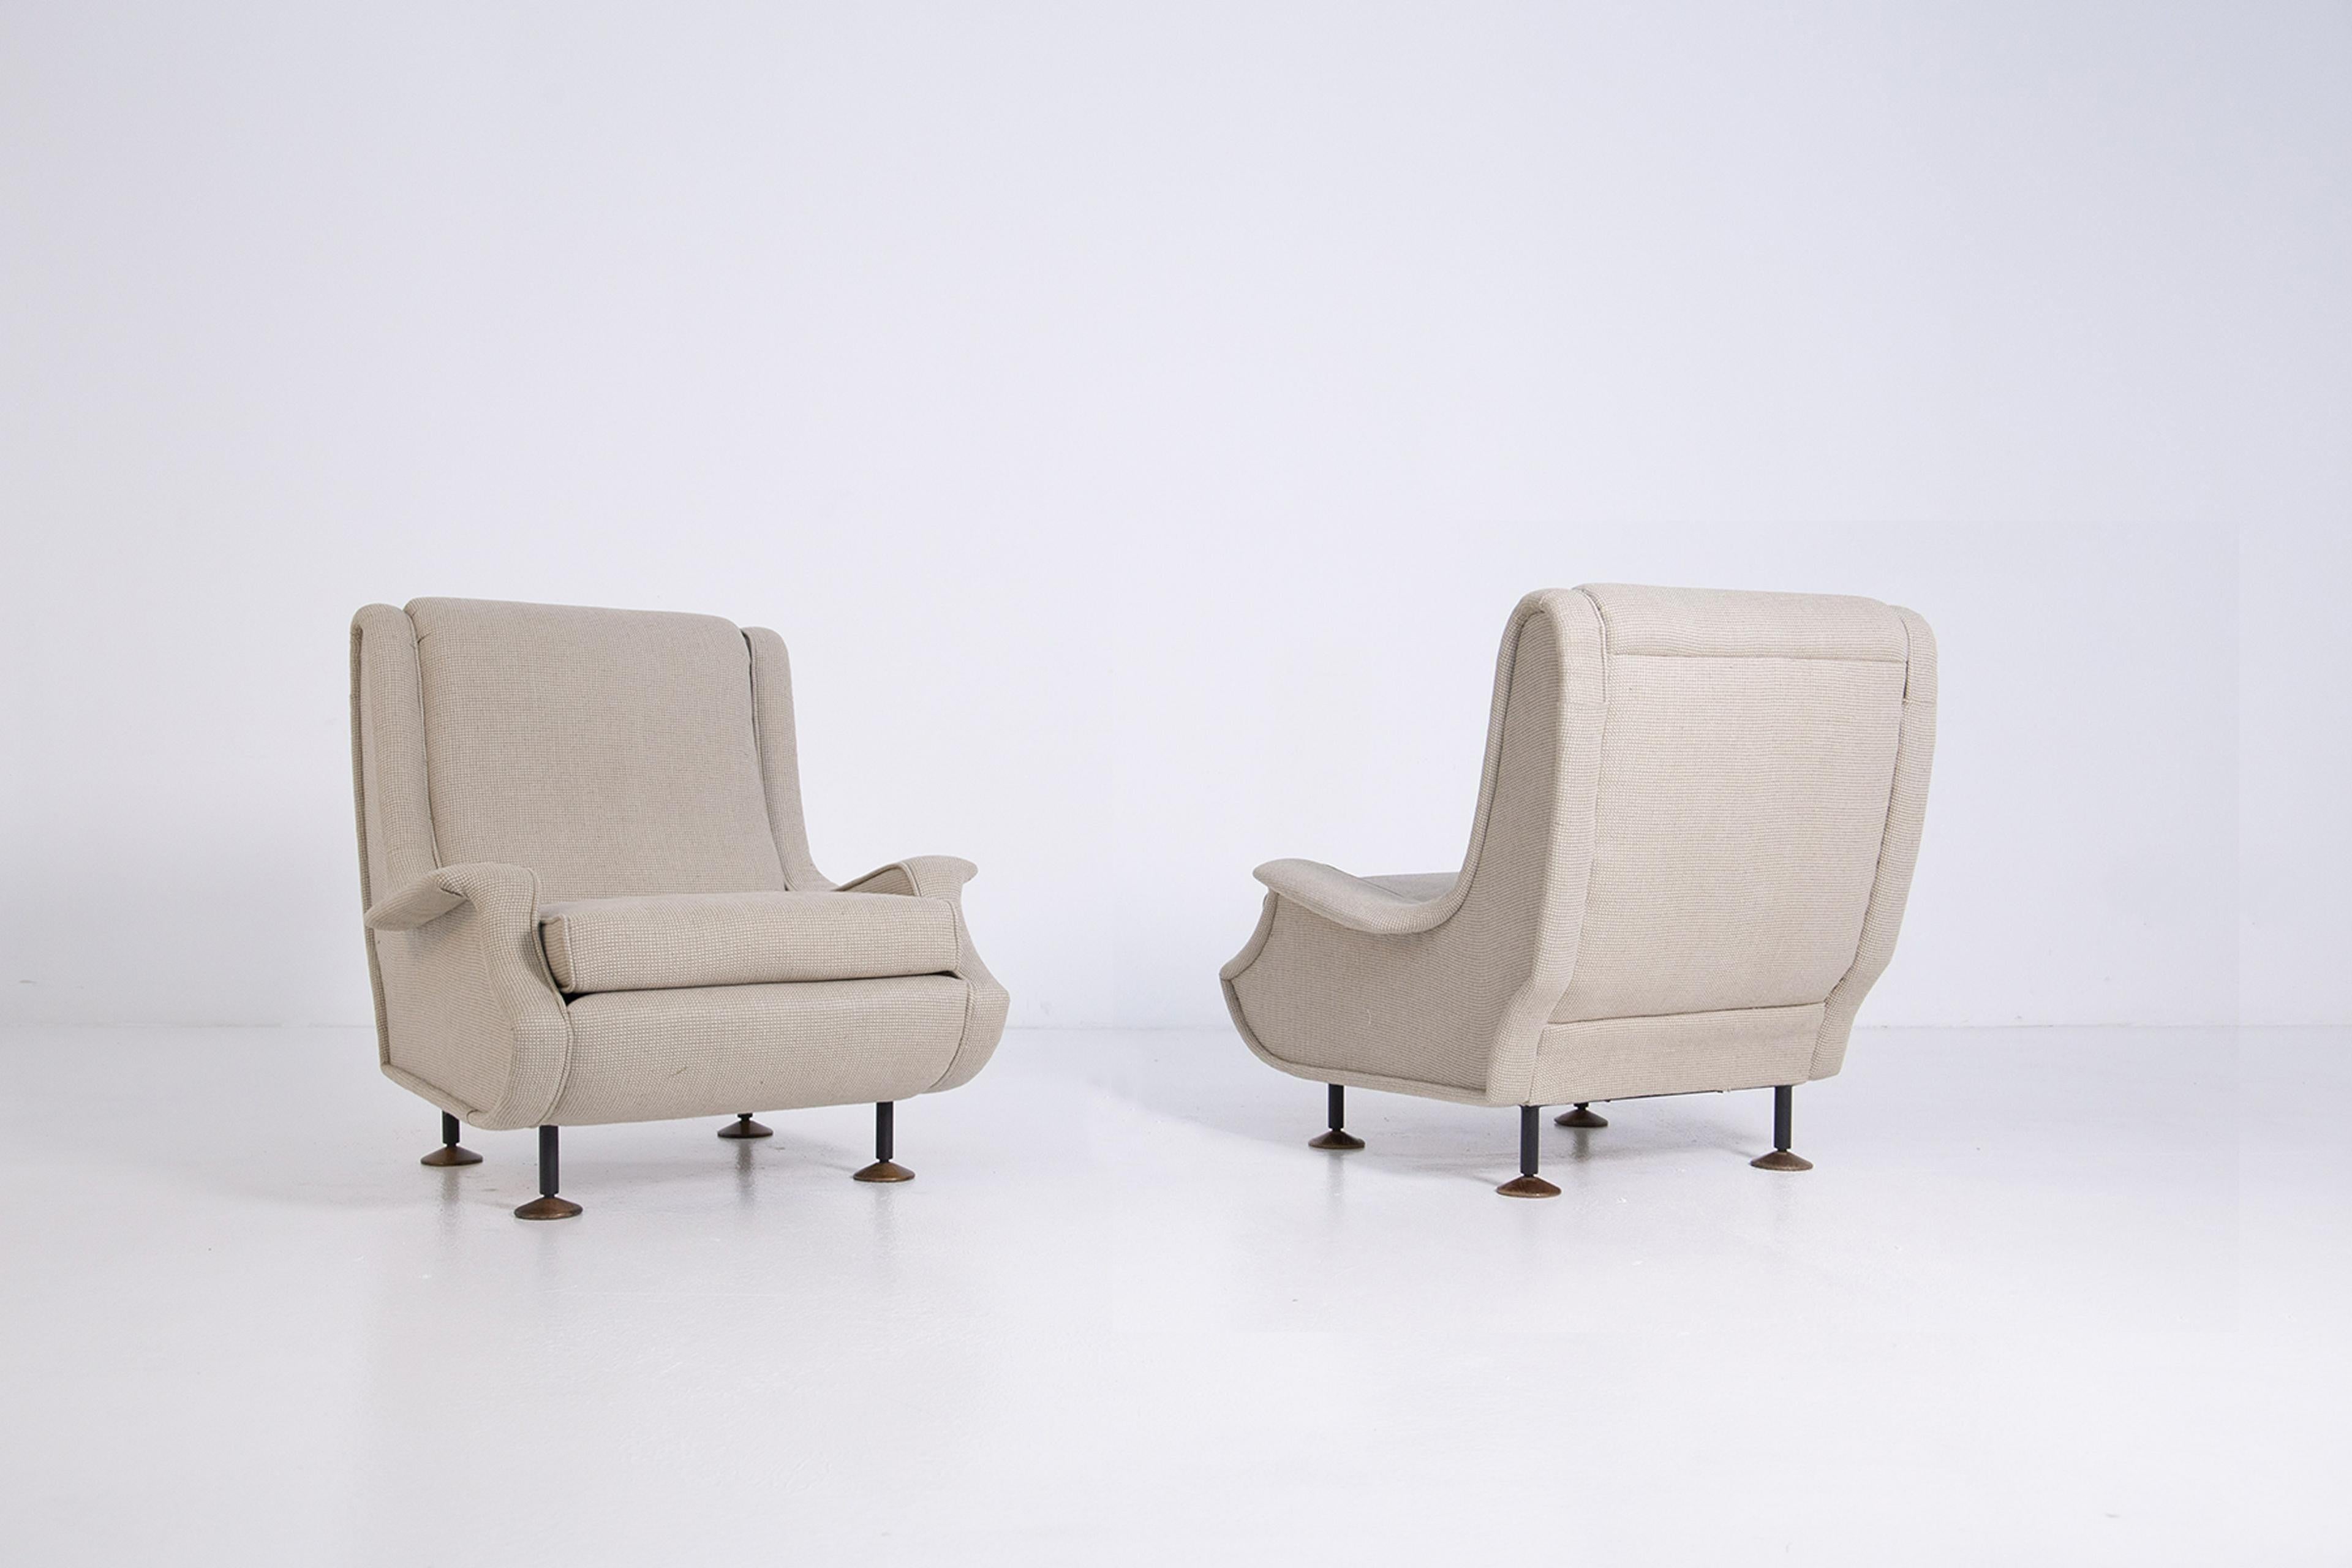 Regent-Sessel von Marco Zanuso, Arflex, Italien, 1960er Jahre

Der Regent wurde 1960 von Marco Zanuso entworfen und ist weniger bekannt als sein klassischer 